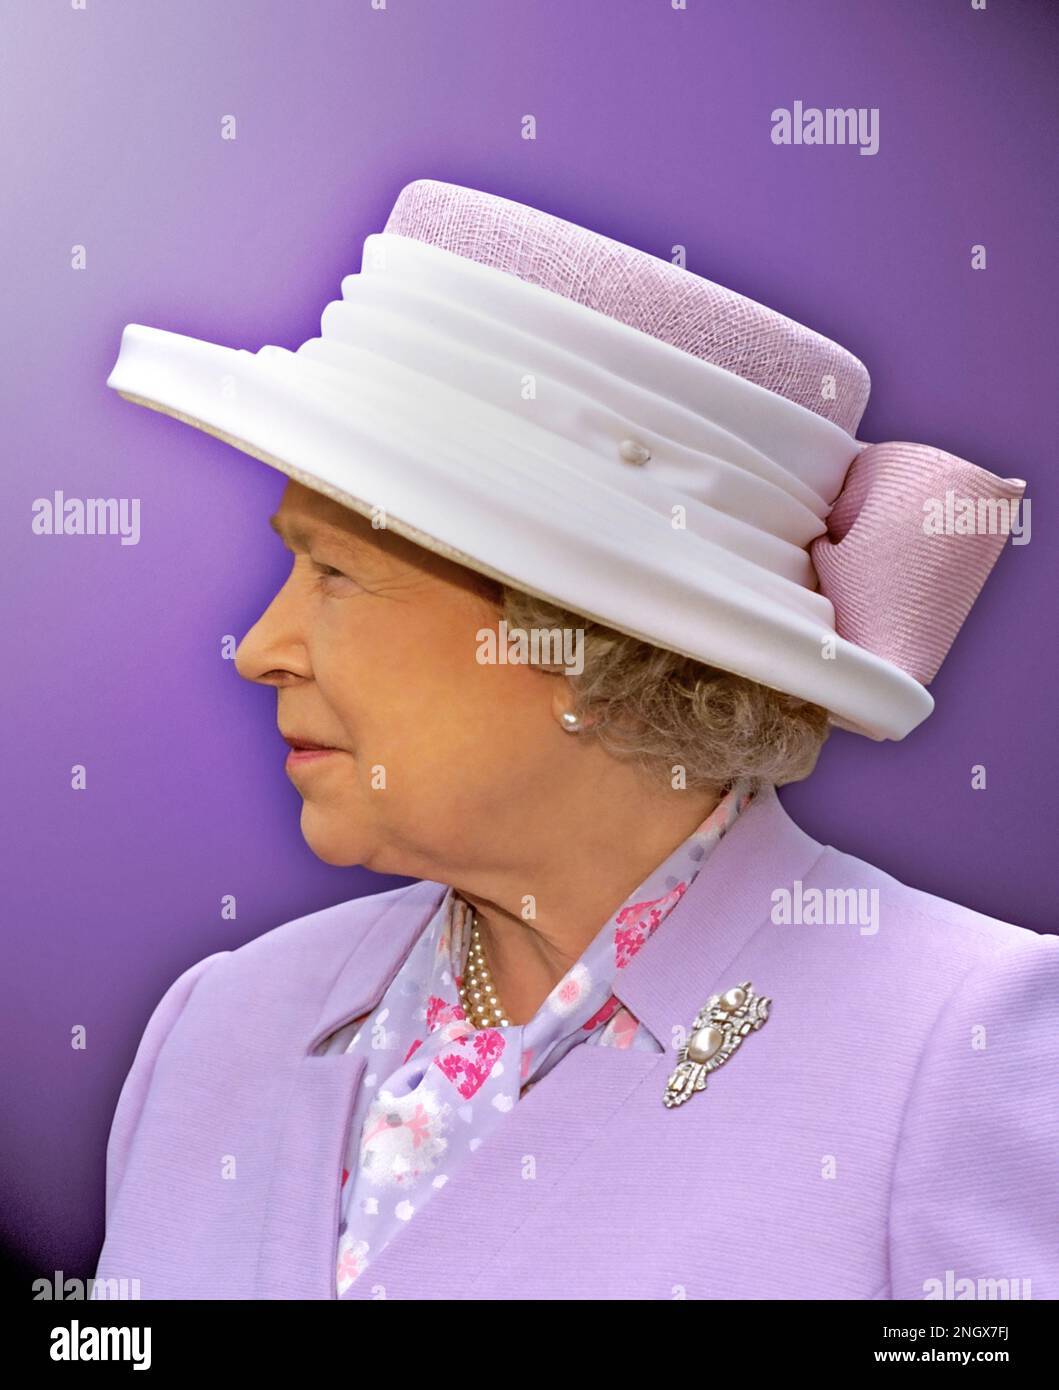 PROFIL DE LA REINE ELIZABETH II Portrait de la tête et des épaules format vertical sur fond violet de la reine Elizabeth II (photographié par Ian Shaw au château de Windsor) Banque D'Images